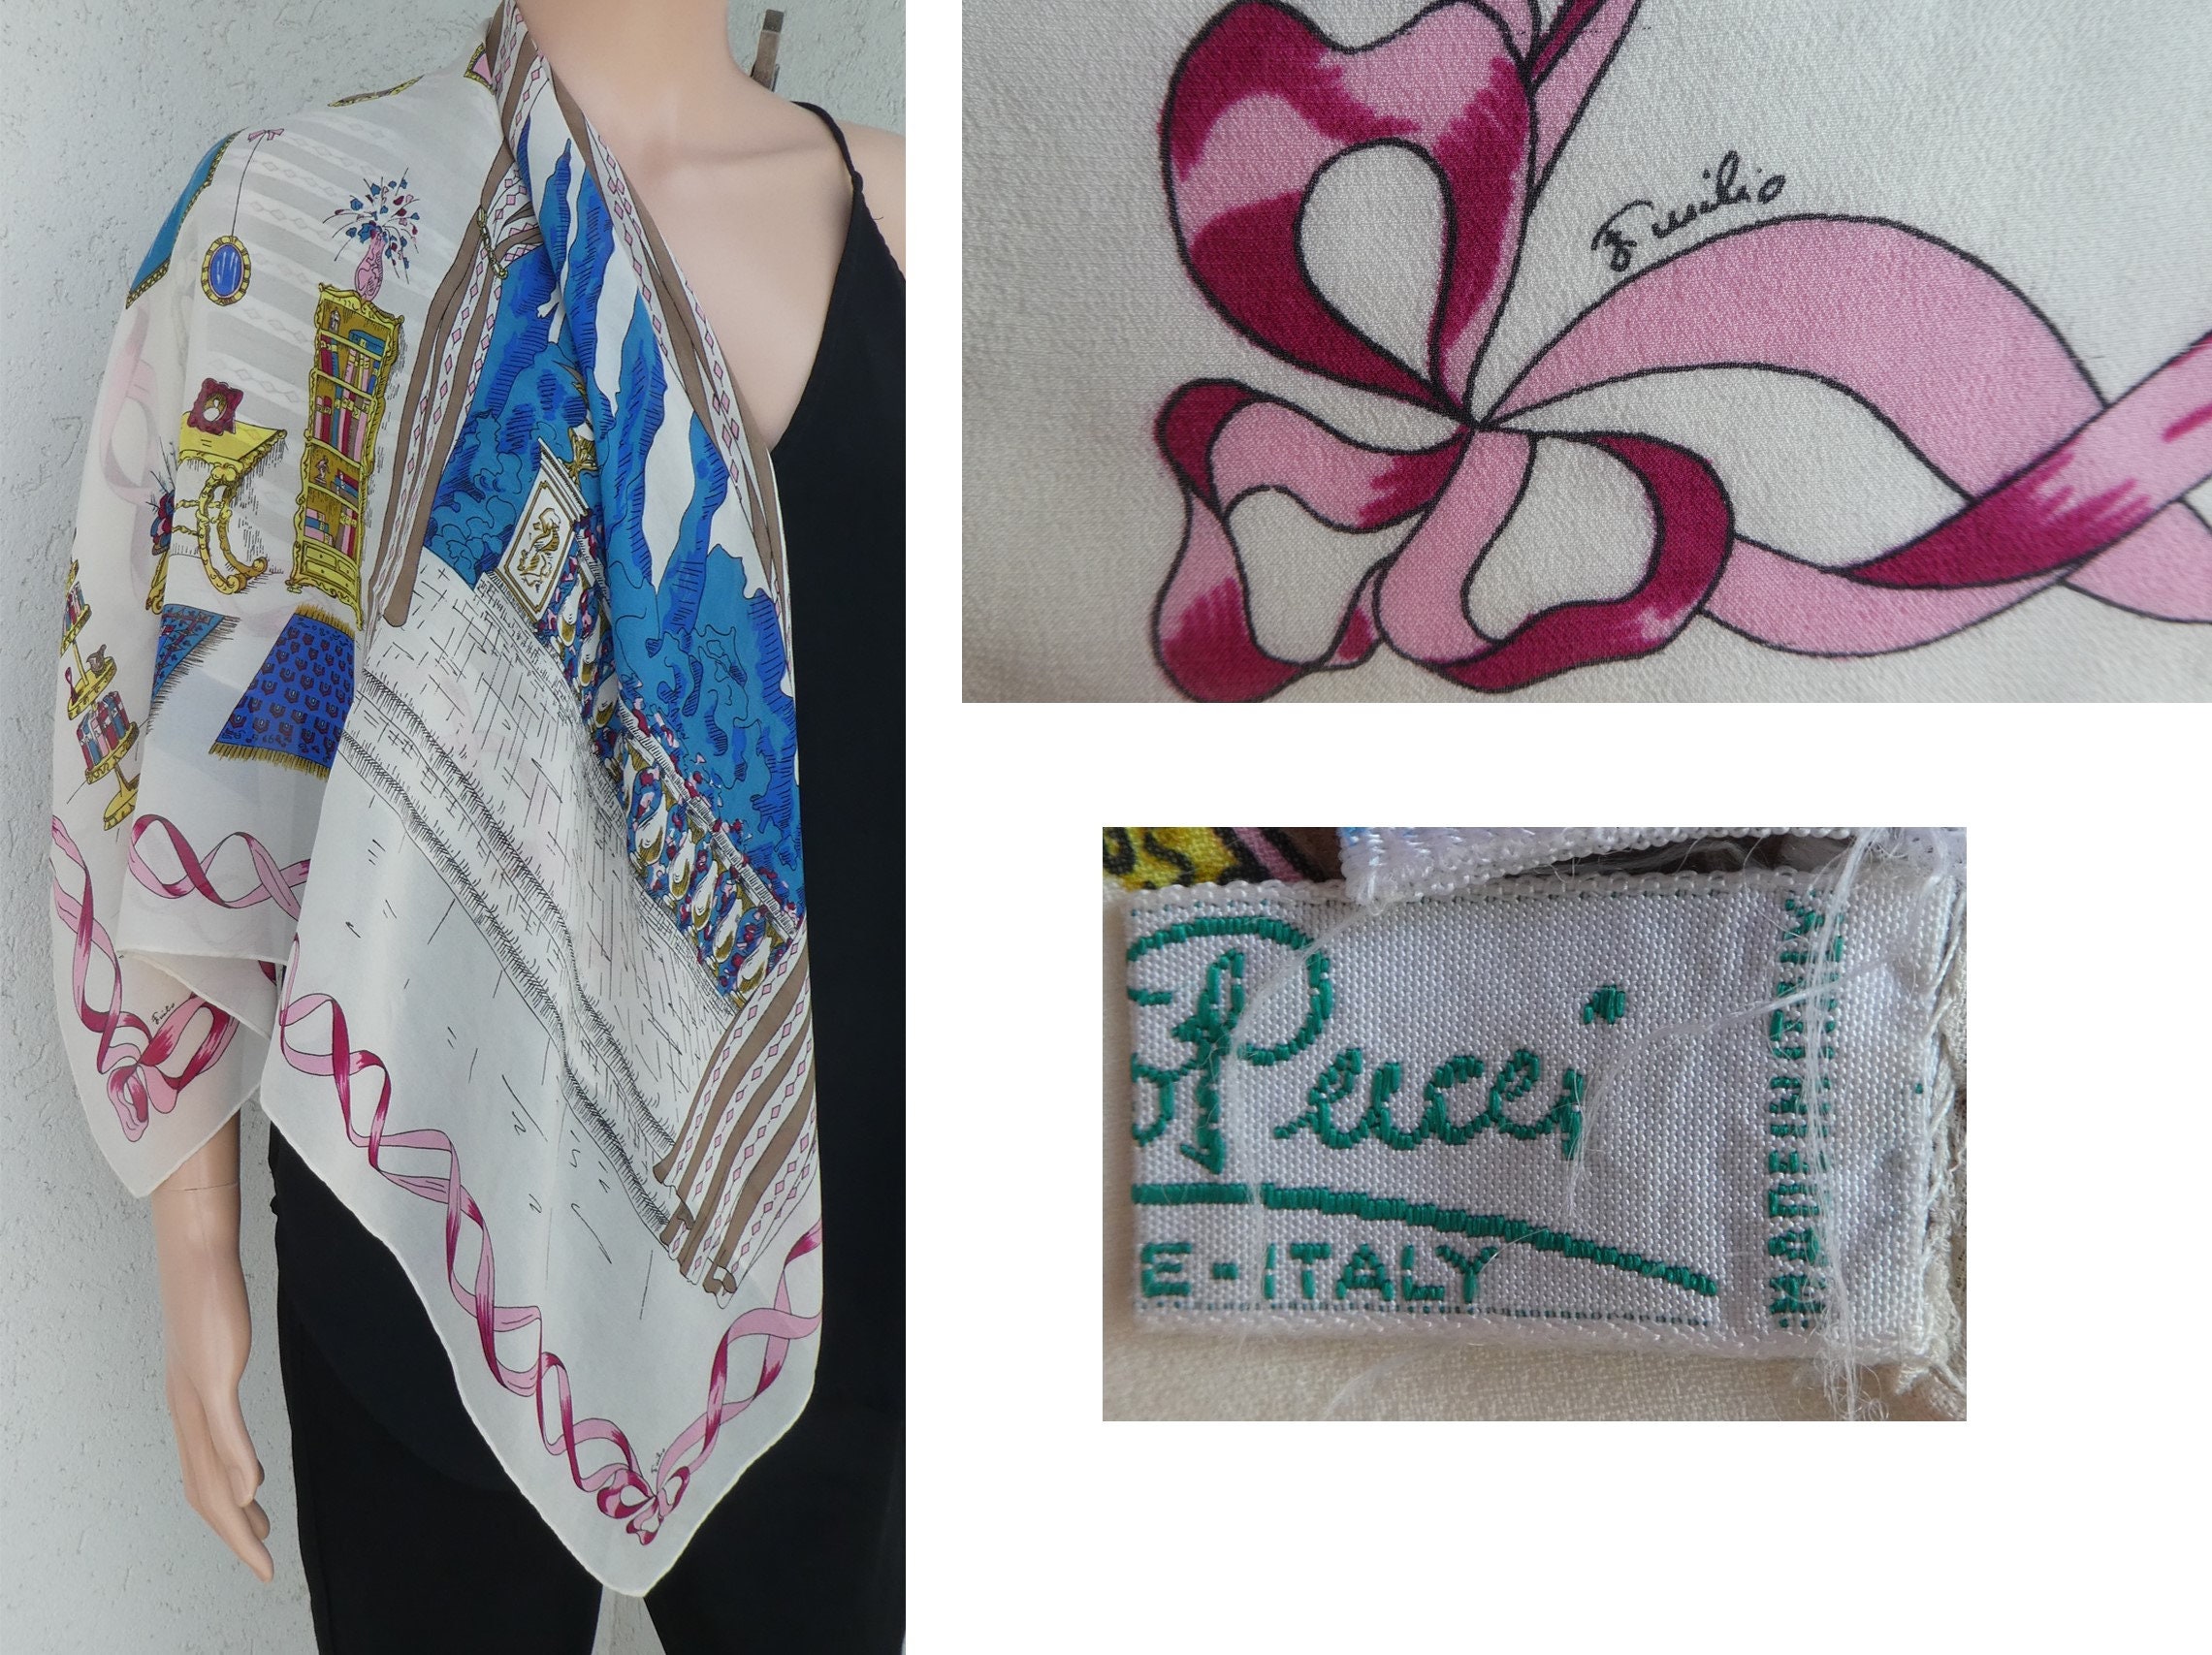 Vintage 1950s Emilio Pucci Top Silk Jersey Blouse Size M L